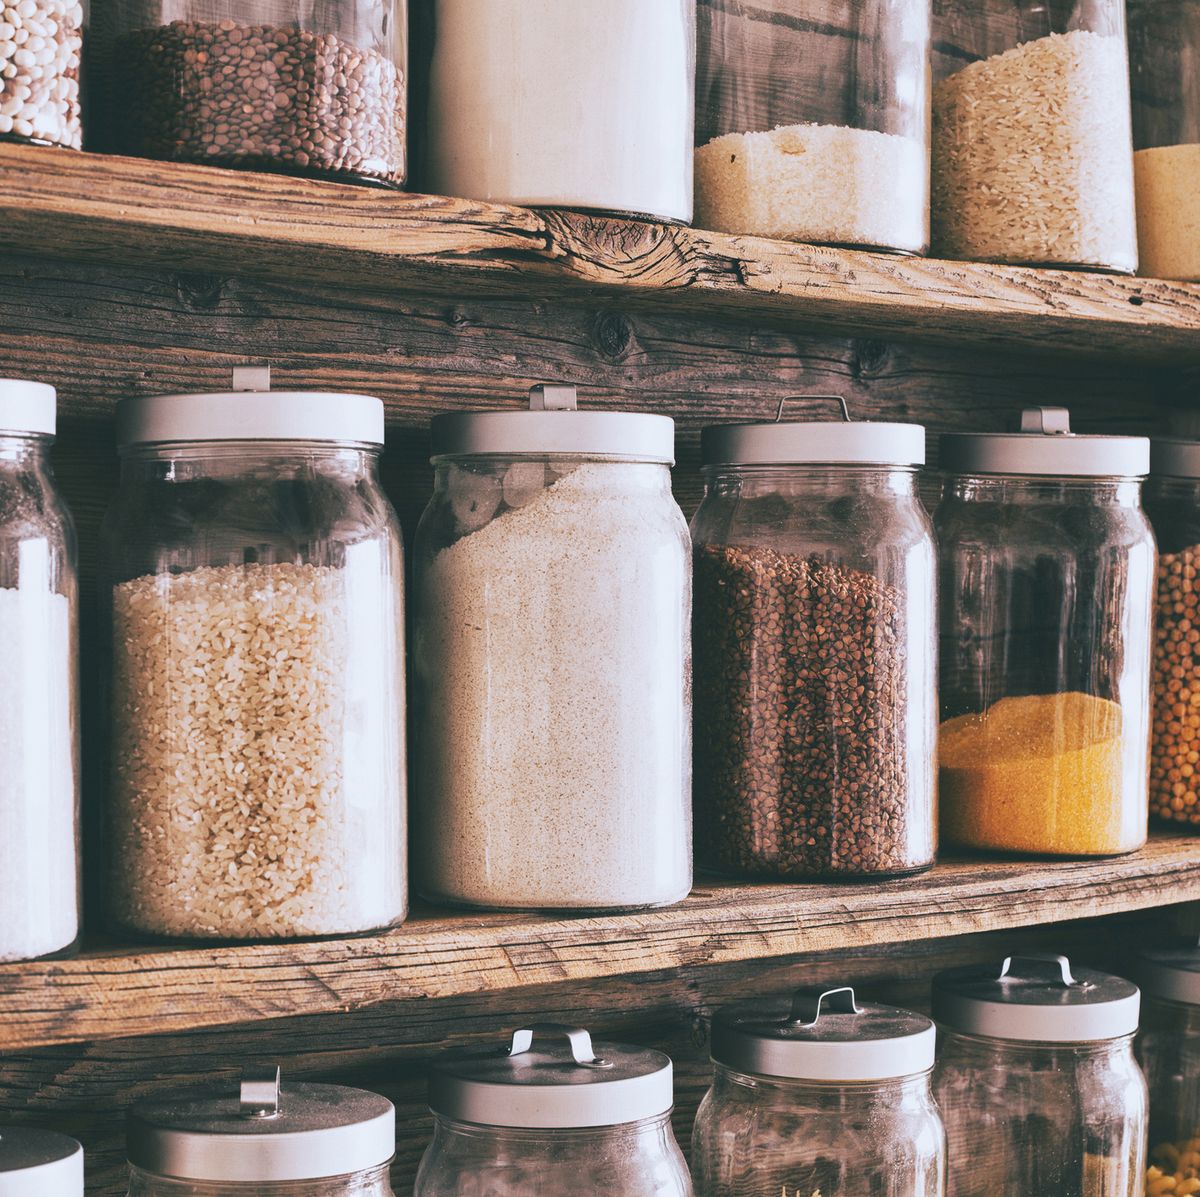 jars of ingredients on wooden shelves in pantry